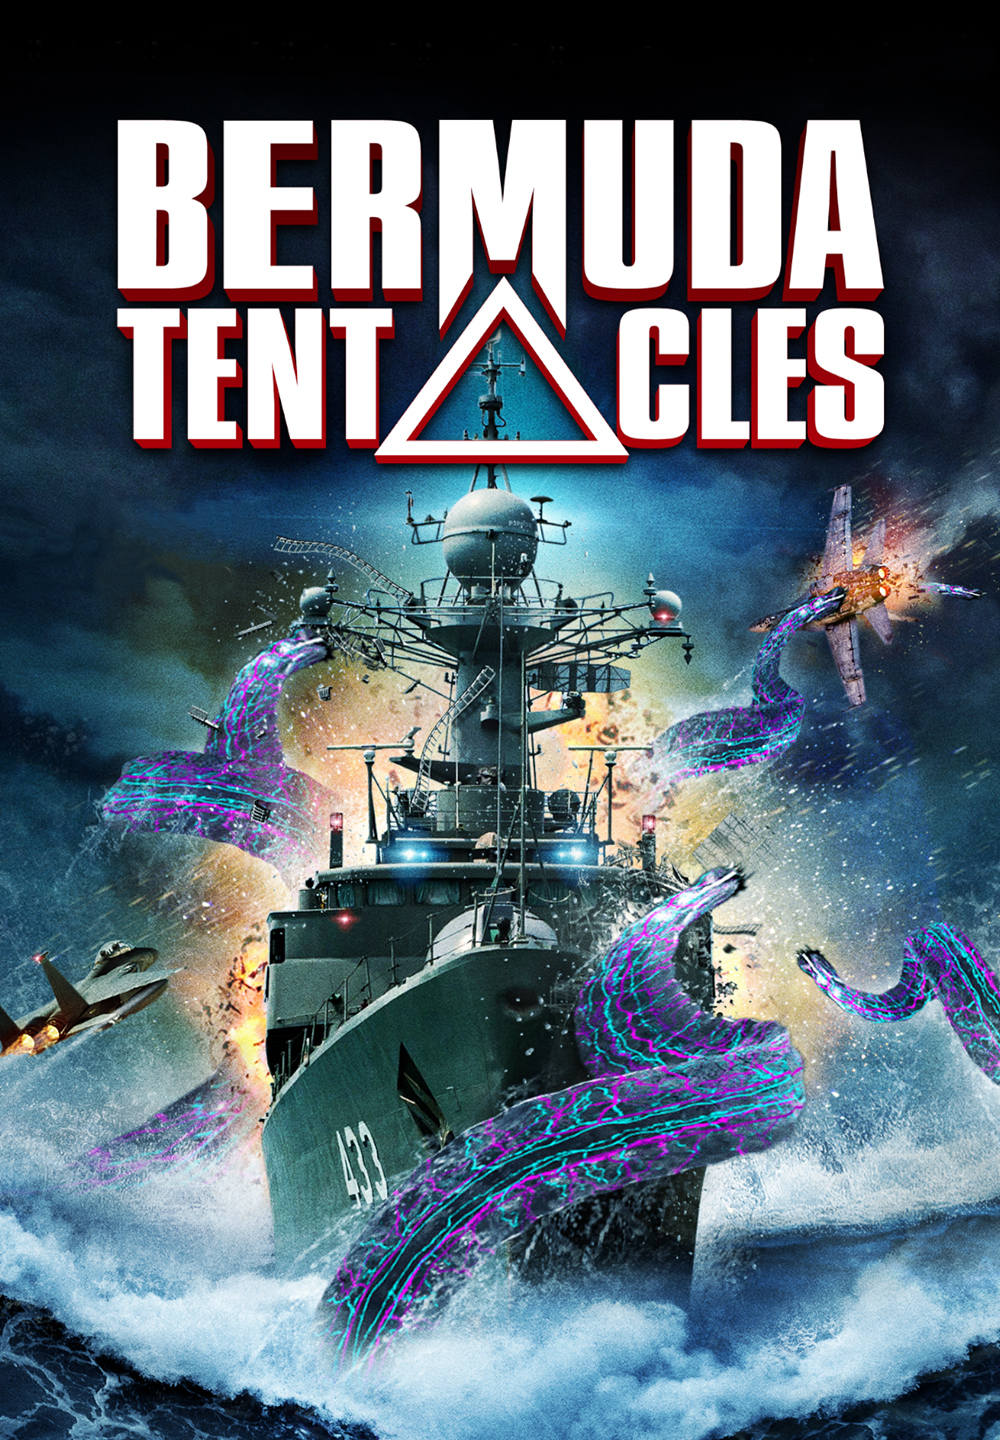 Bermuda tentacles [HD] (2013)